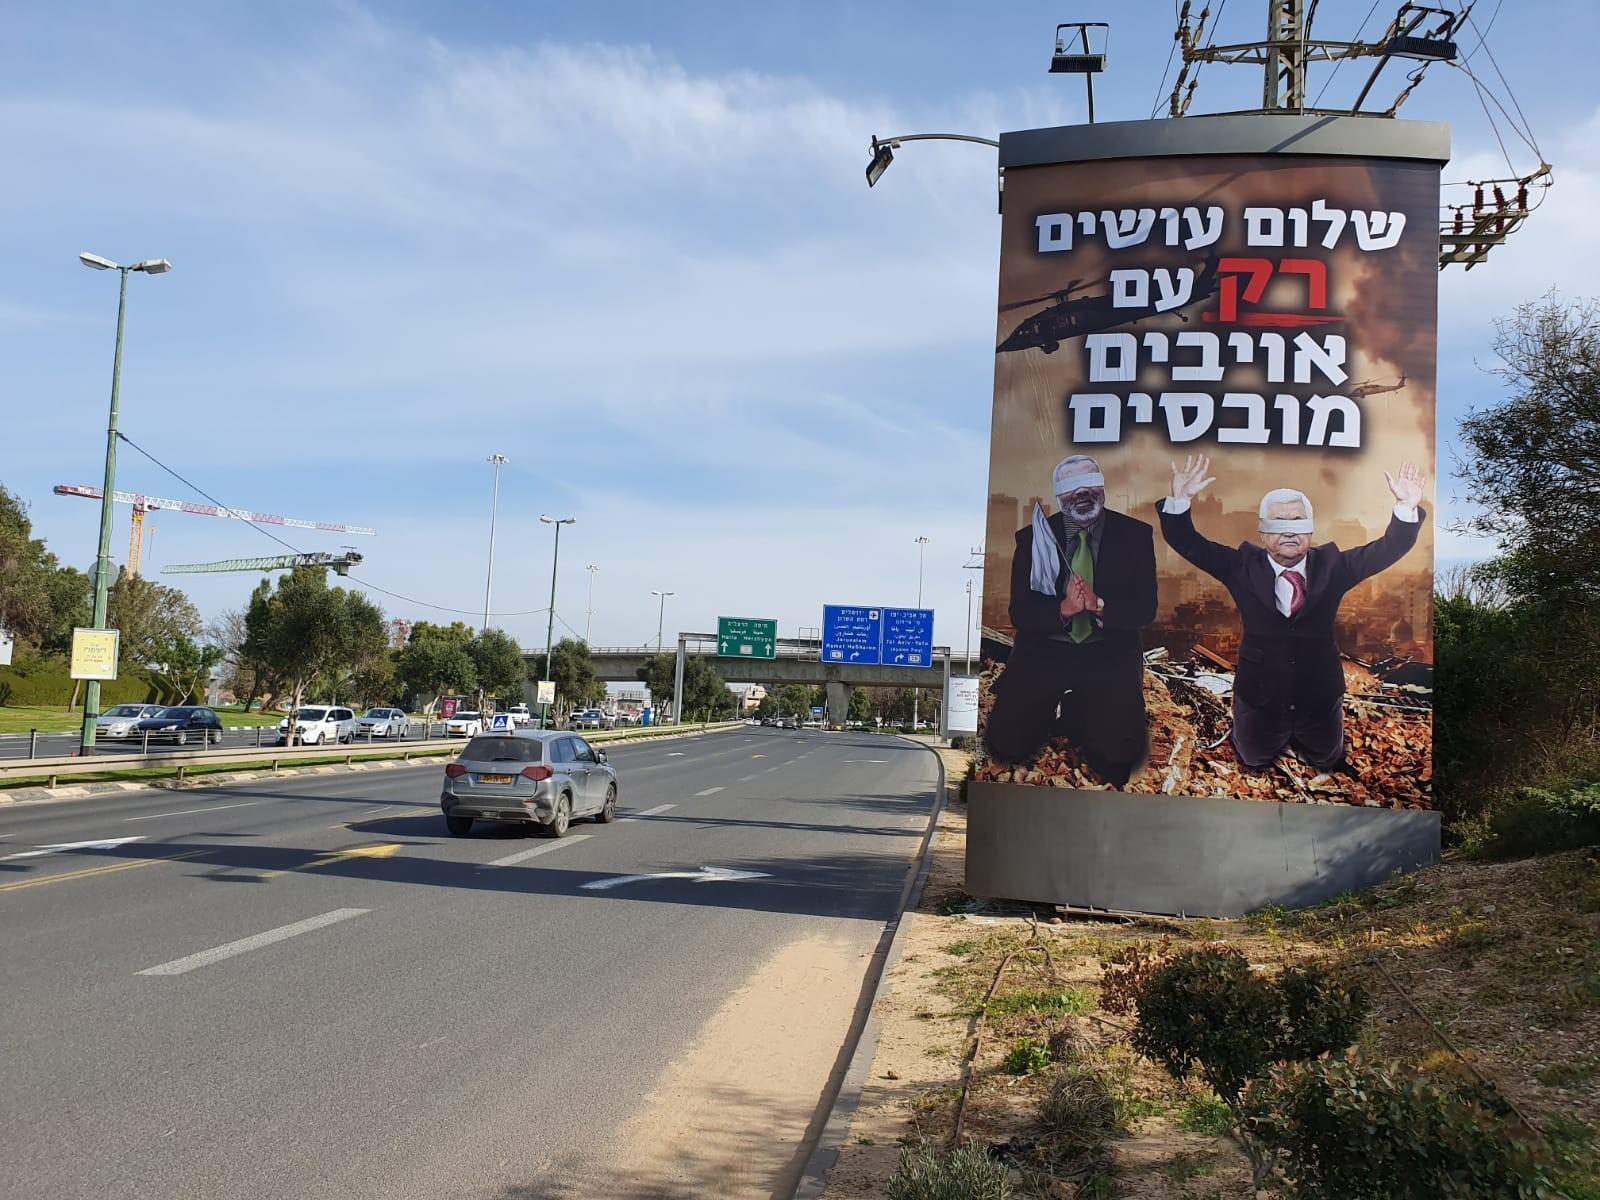 شاهد: الرئيس عباس وهنية على إعلانات دعائية يمينية وسط تل أبيب